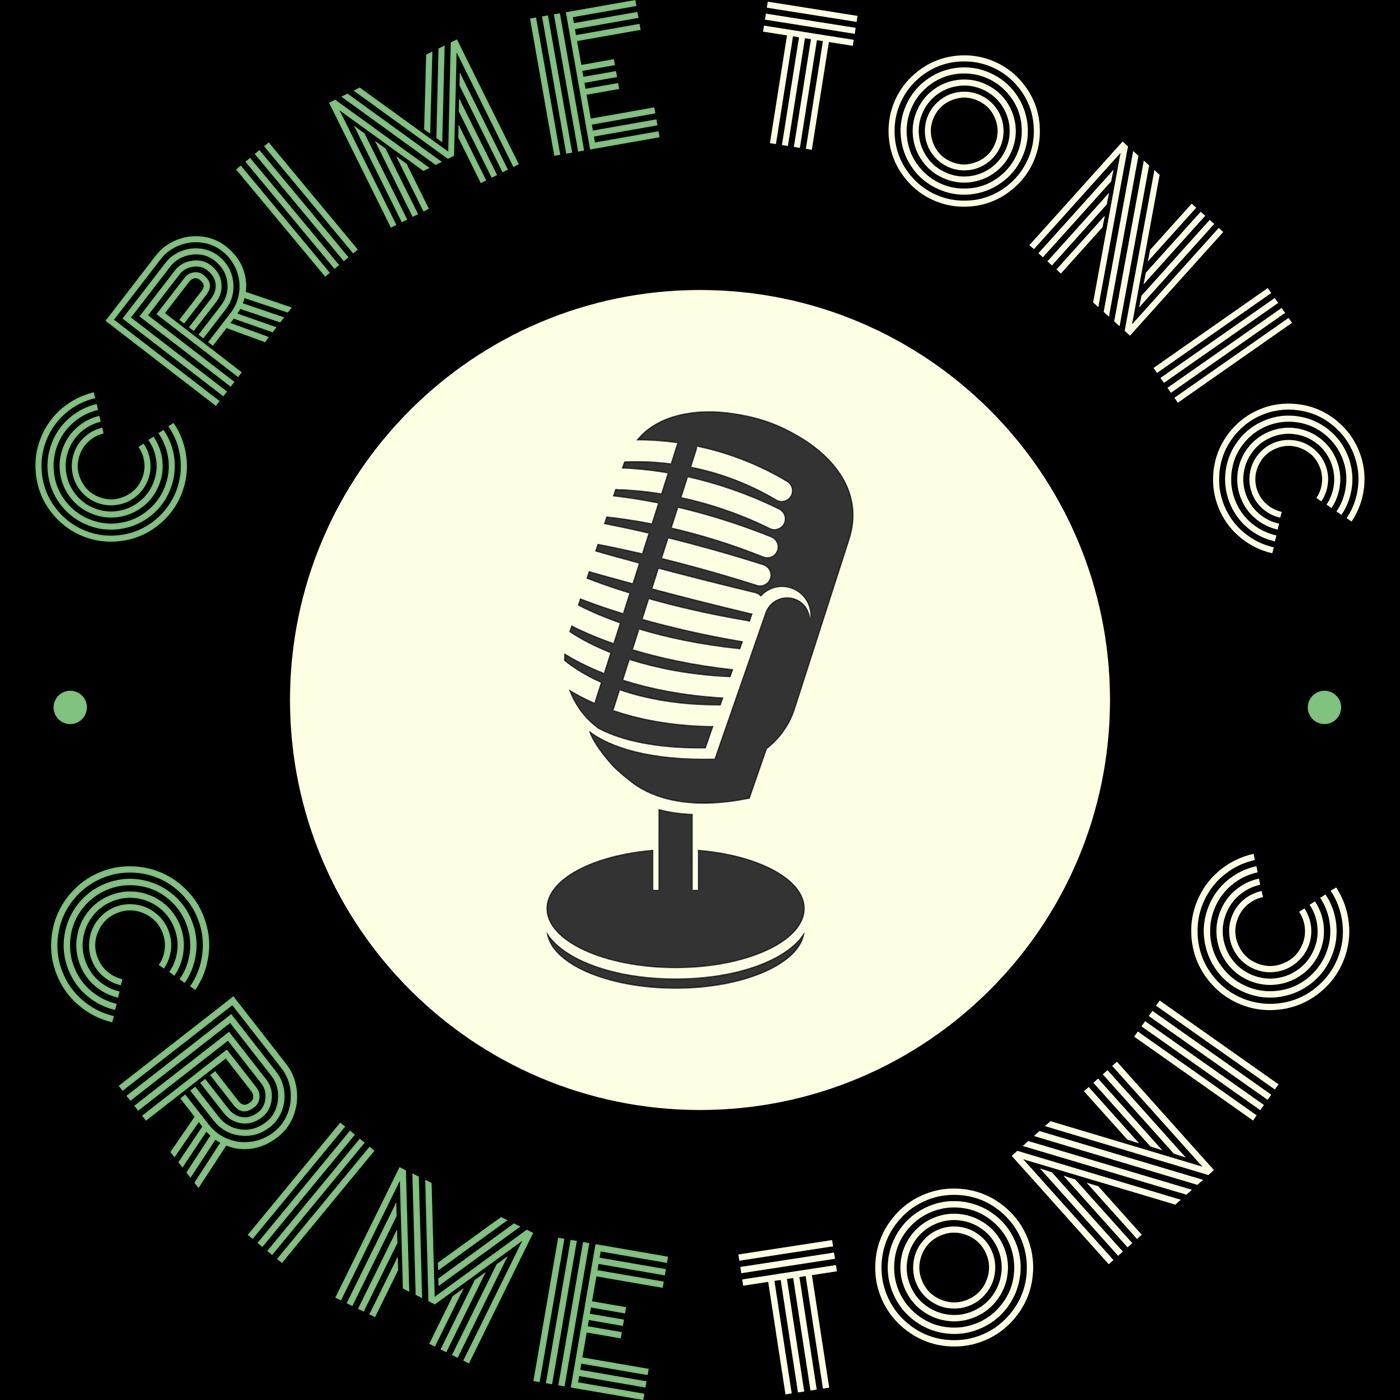 Crime Tonic